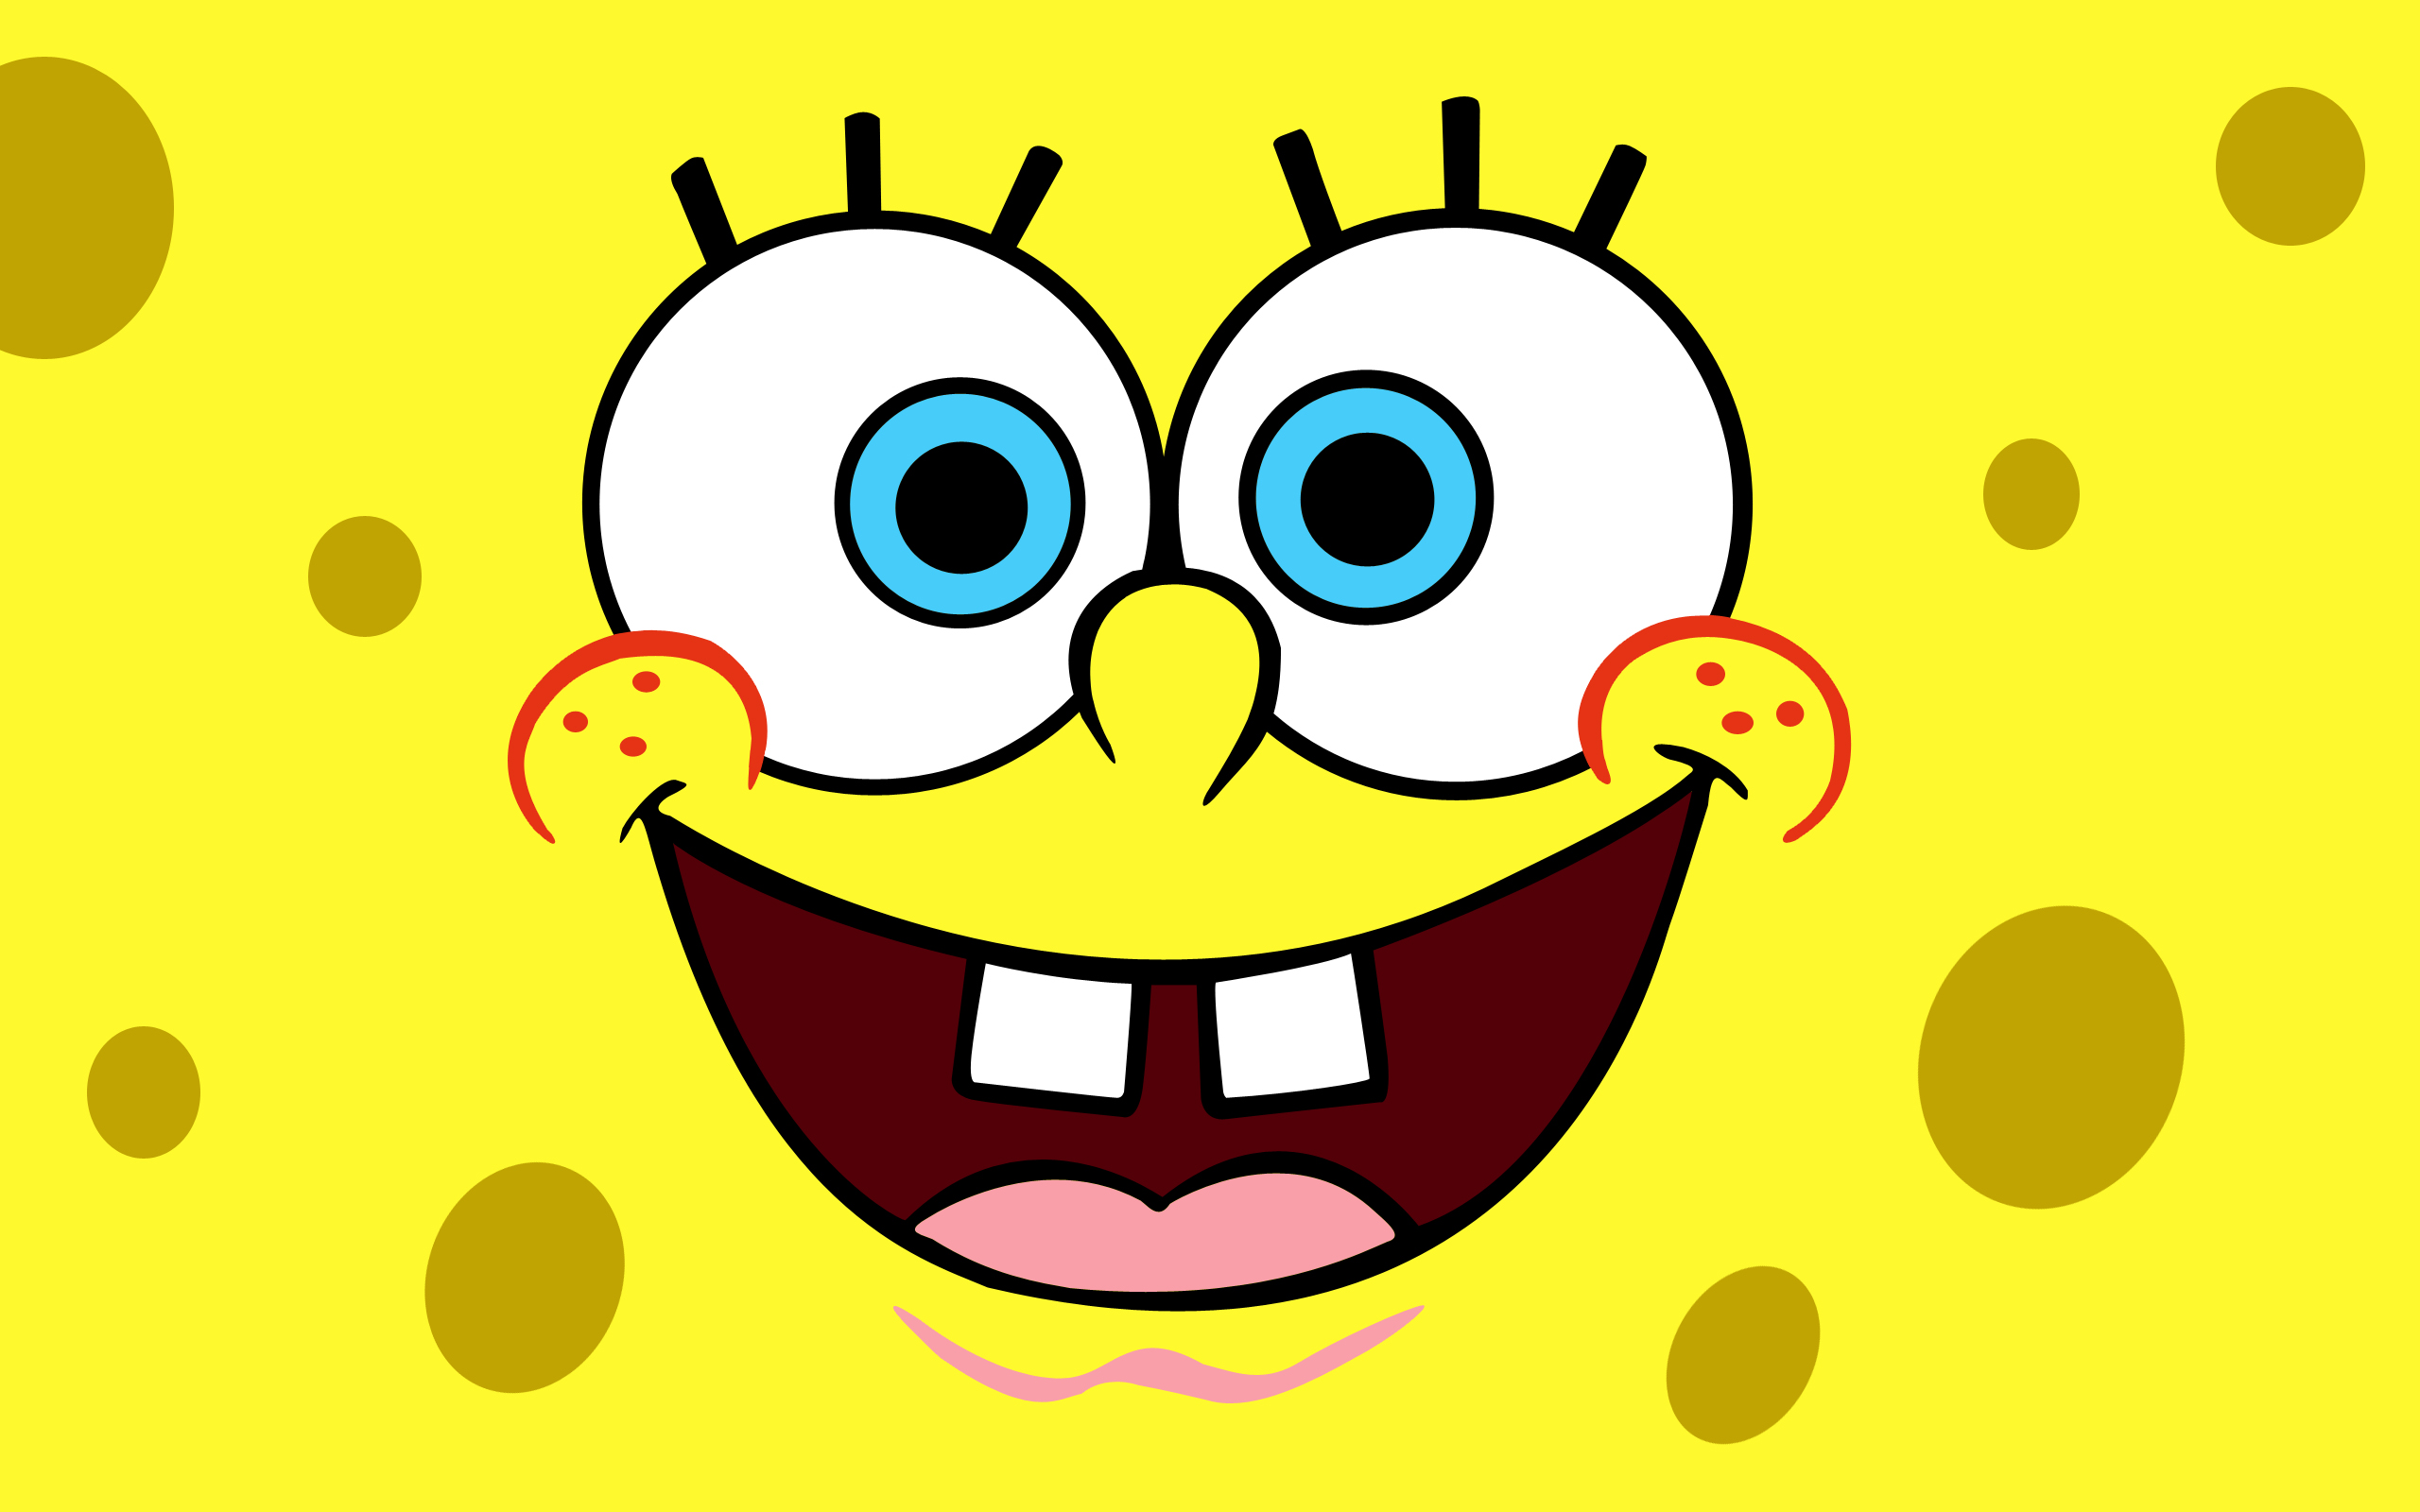 spongebob wallpaper hd,yellow,cartoon,facial expression,smile,emoticon